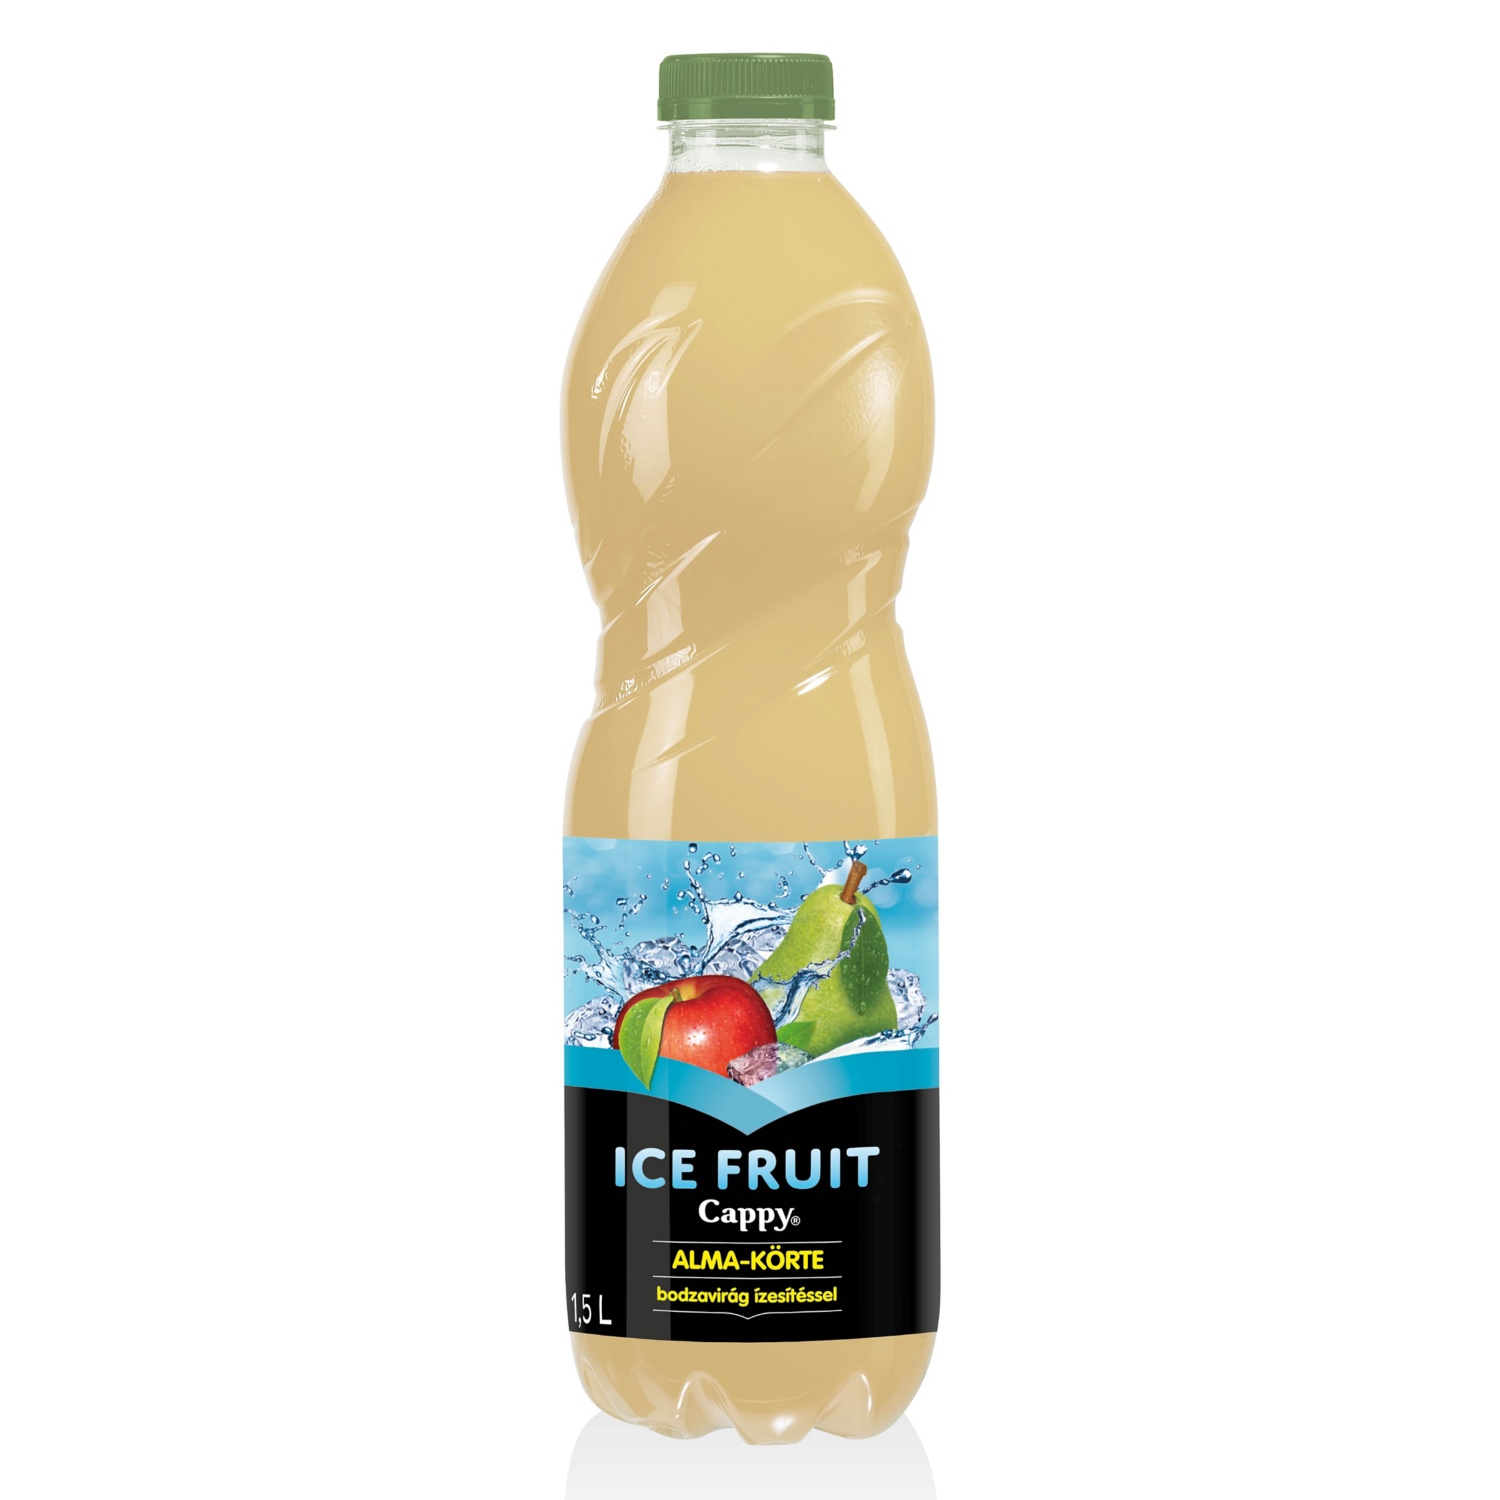 CAPPY Ice Fruit gyümölcsital, 1,5 l, alma-körte